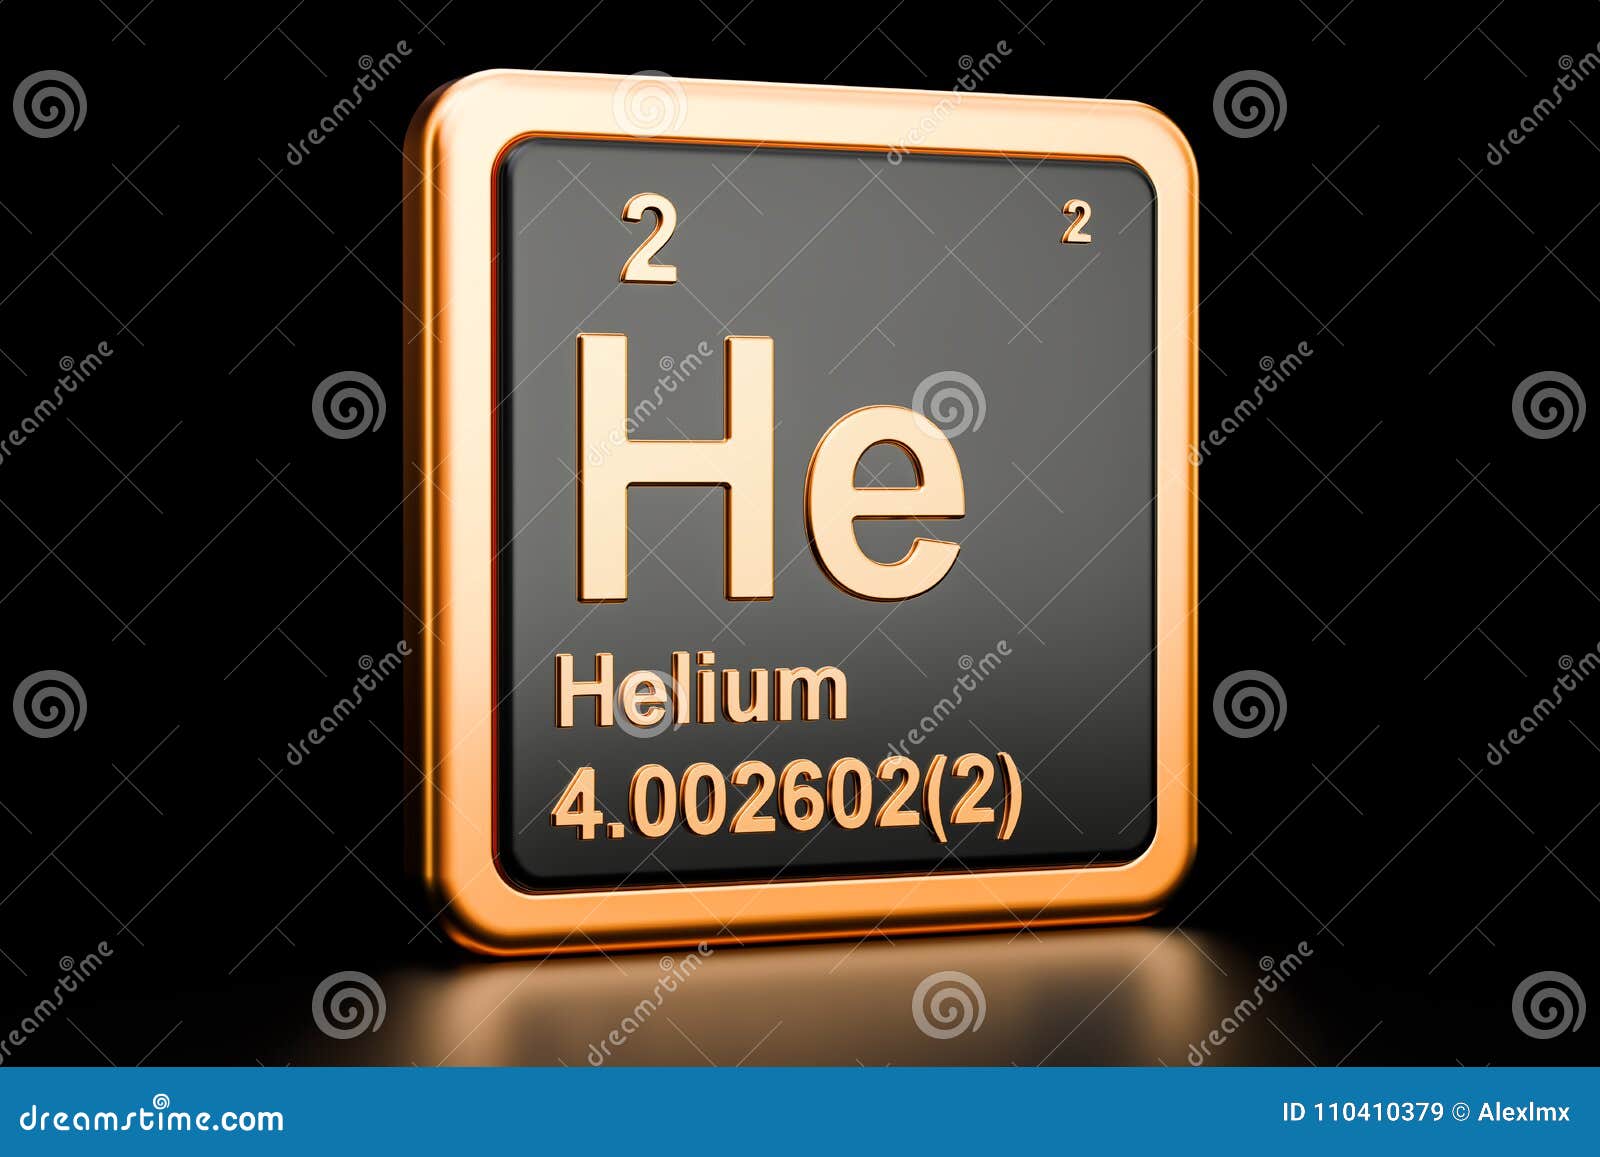 helium he chemical . 3d rendering